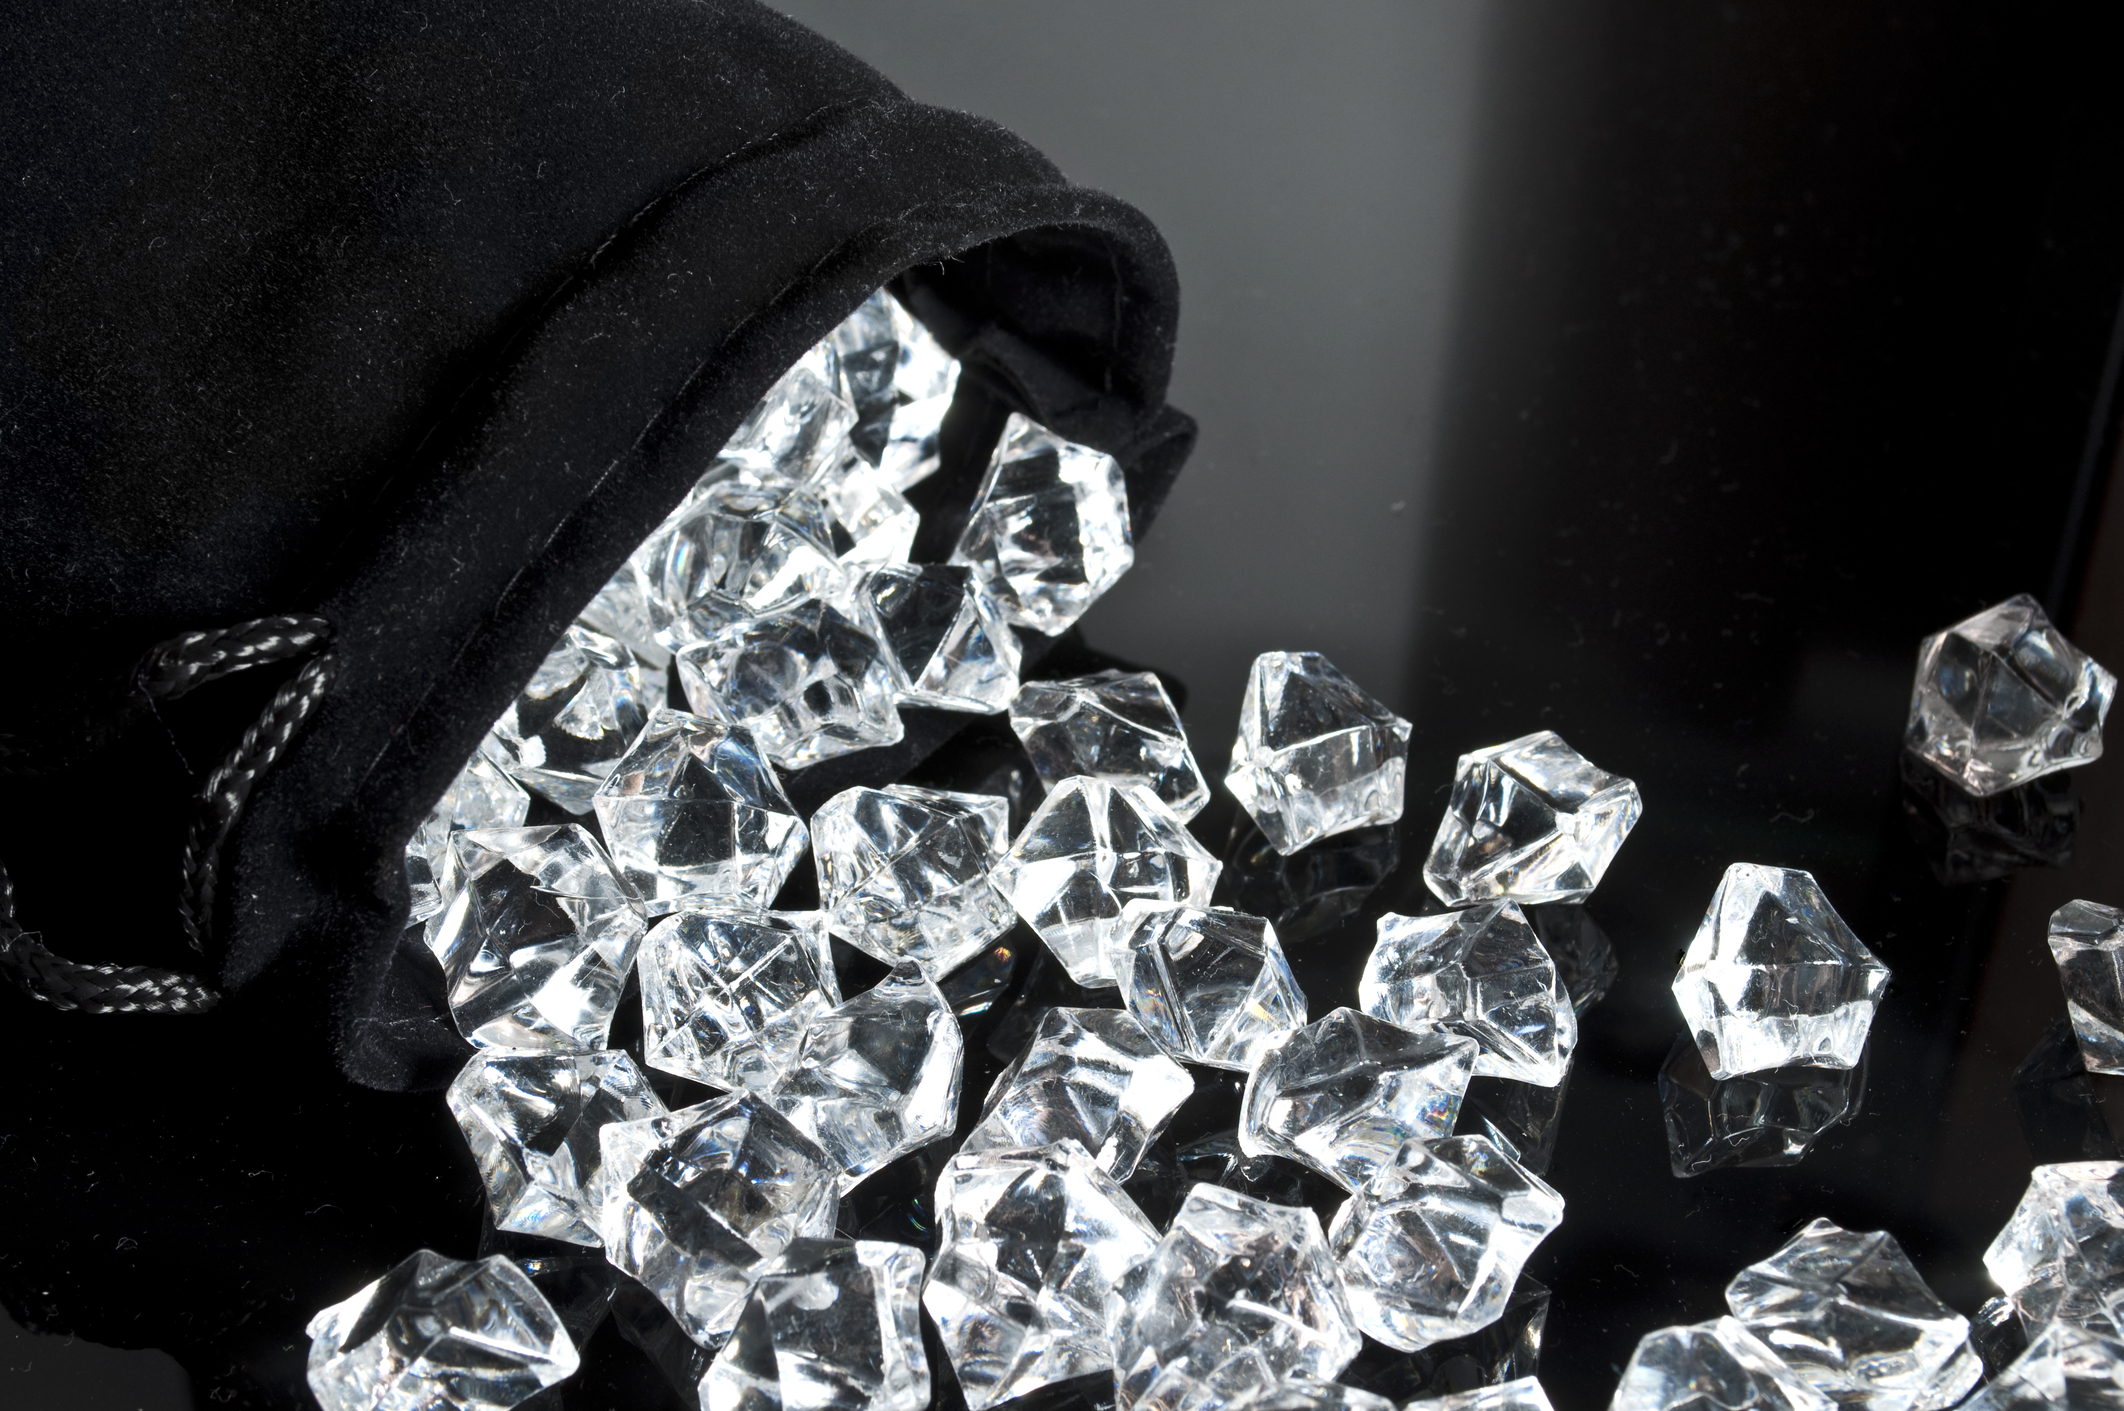 Diamantes apreendidos pela PJ na Operação Miríade valem apenas 290 euros